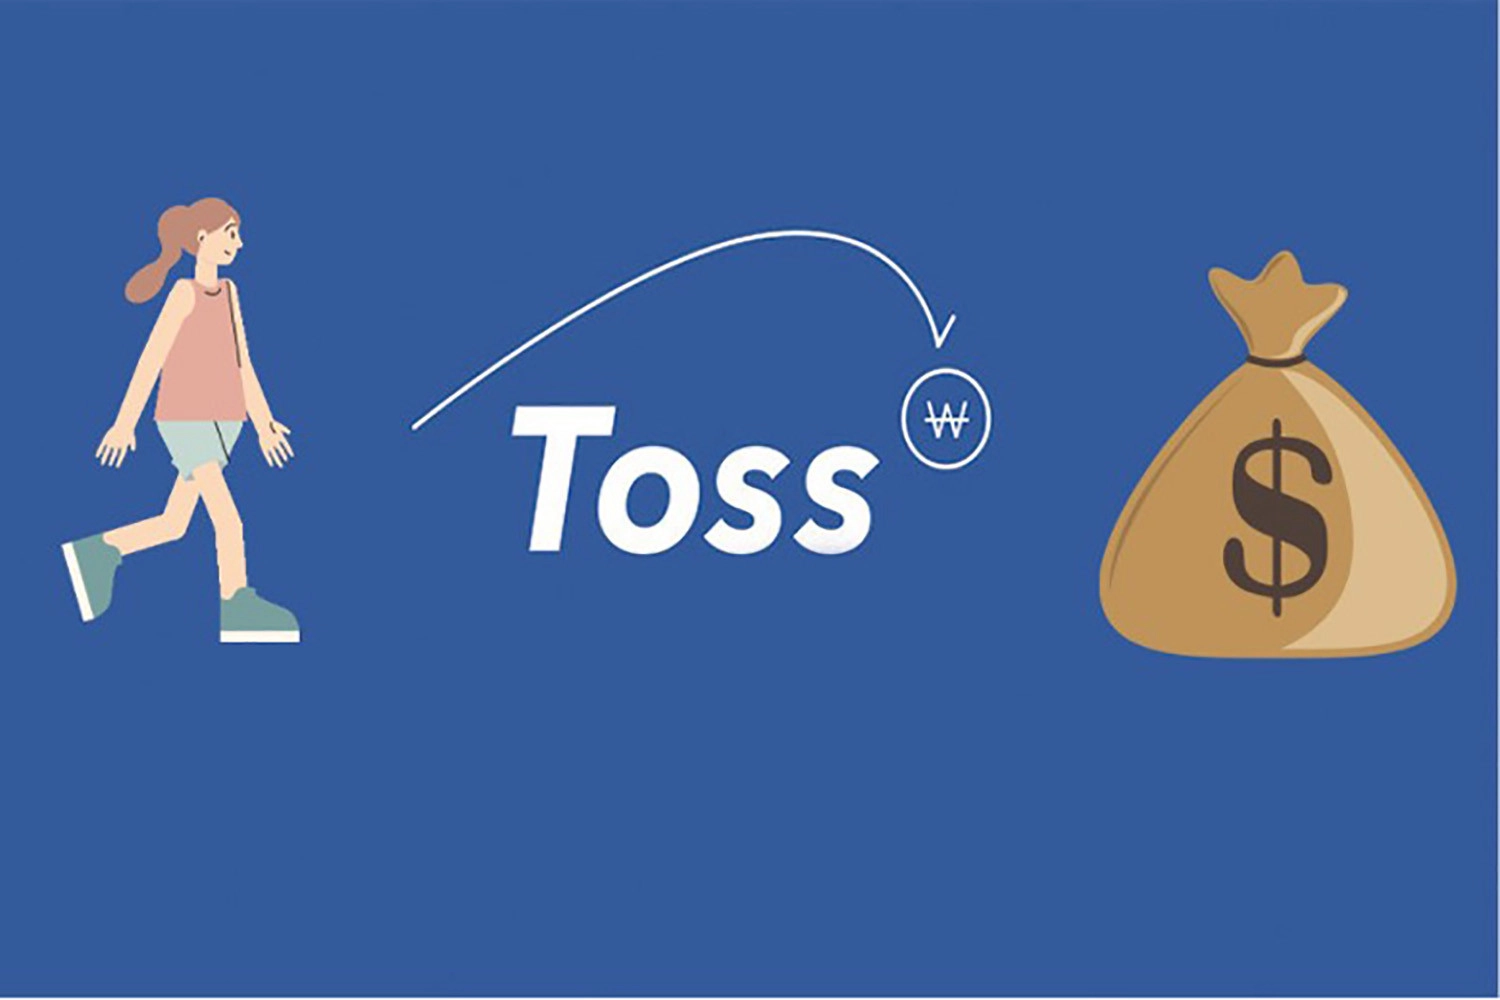 Toss – App đi bộ kiếm tiền online